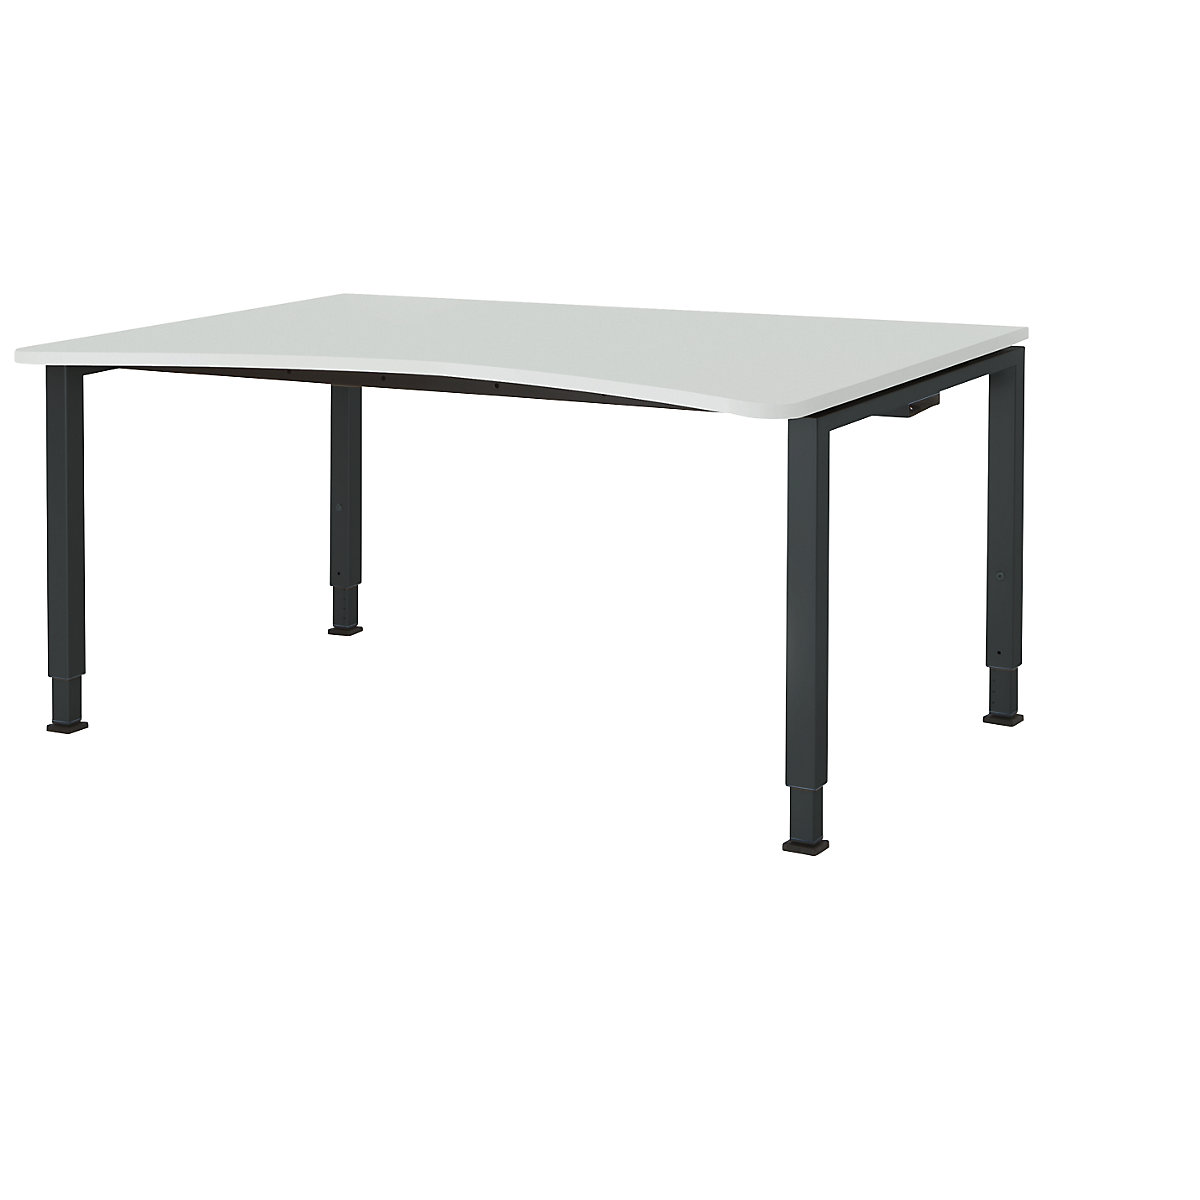 Miza s polkrožno ploščo, nastavljiva po višini – mauser